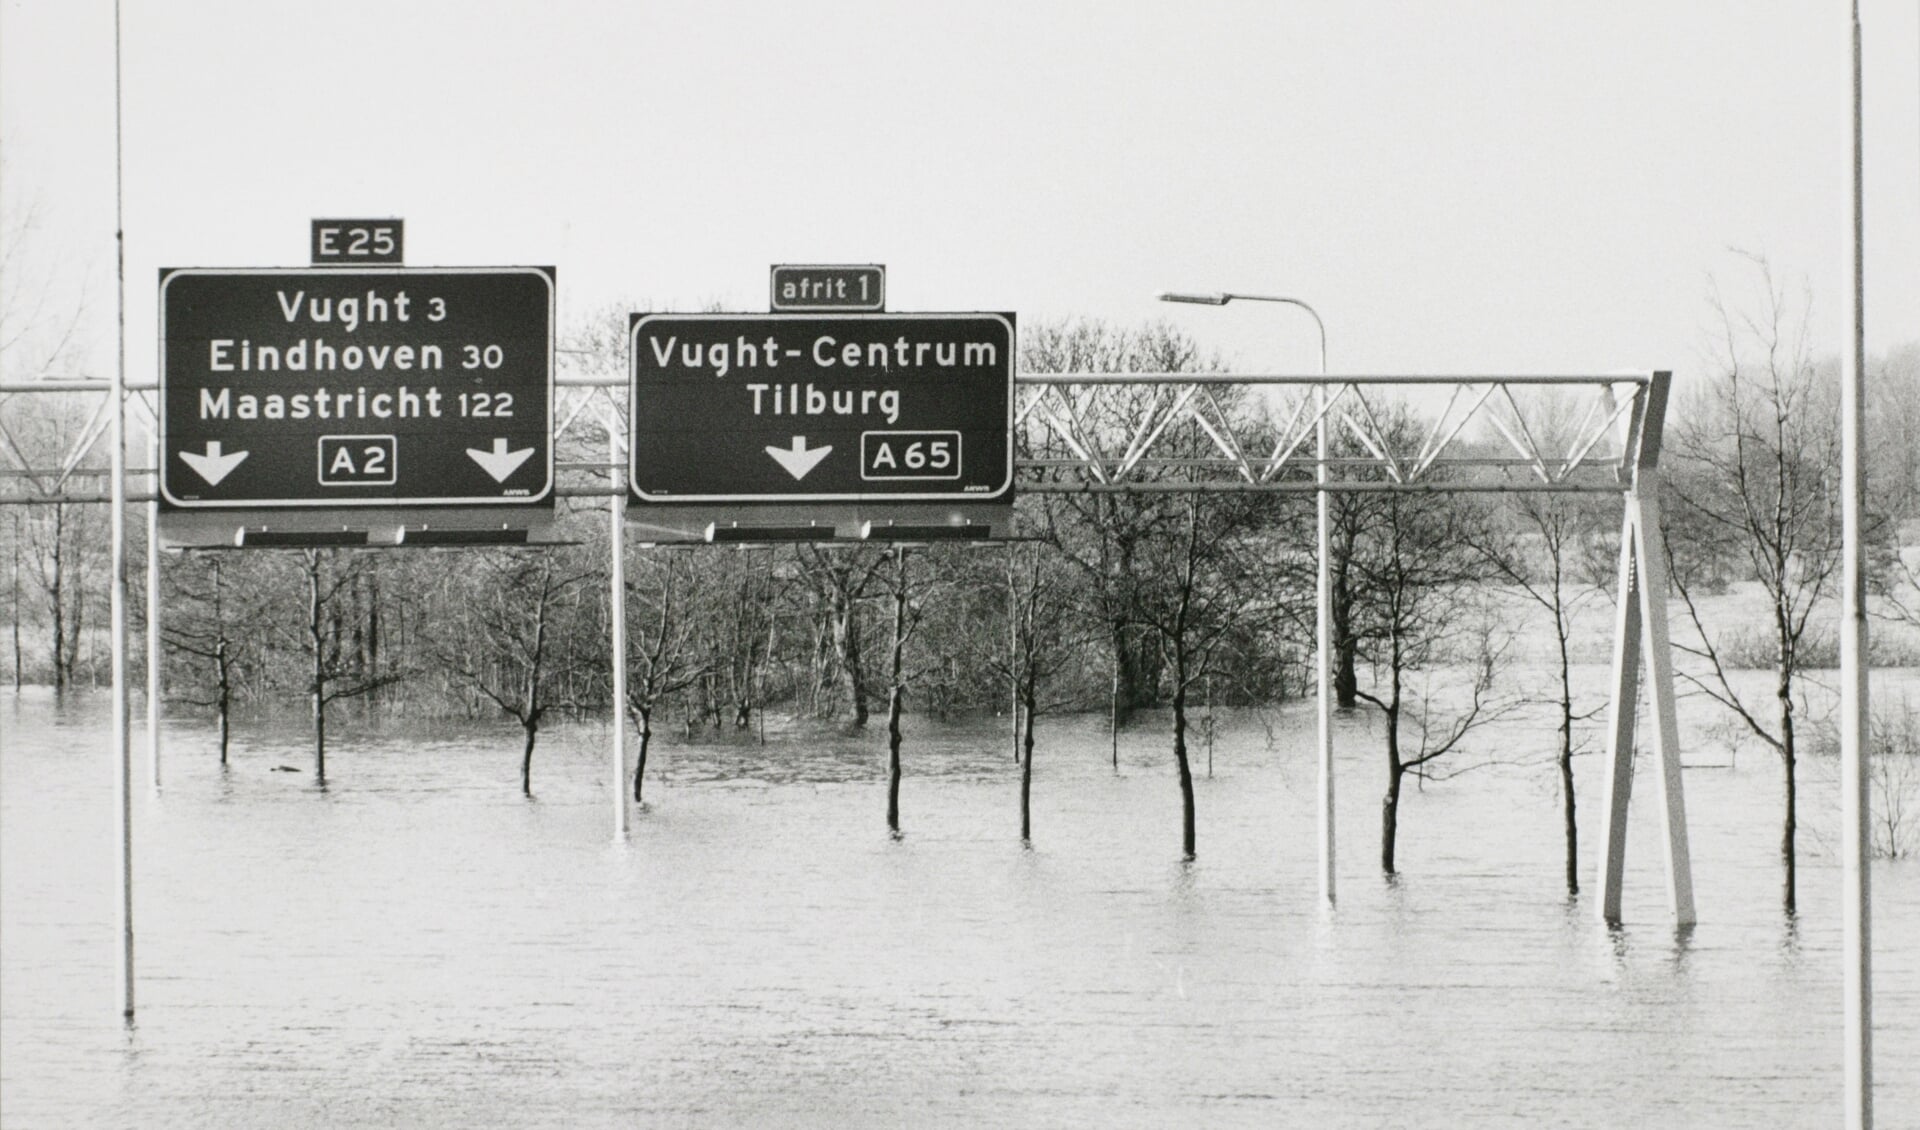 Overstroming van de uiterwaarden van de Maas in februari 1995 op de A2 ter hoogte van de Pettelaarse Schans.